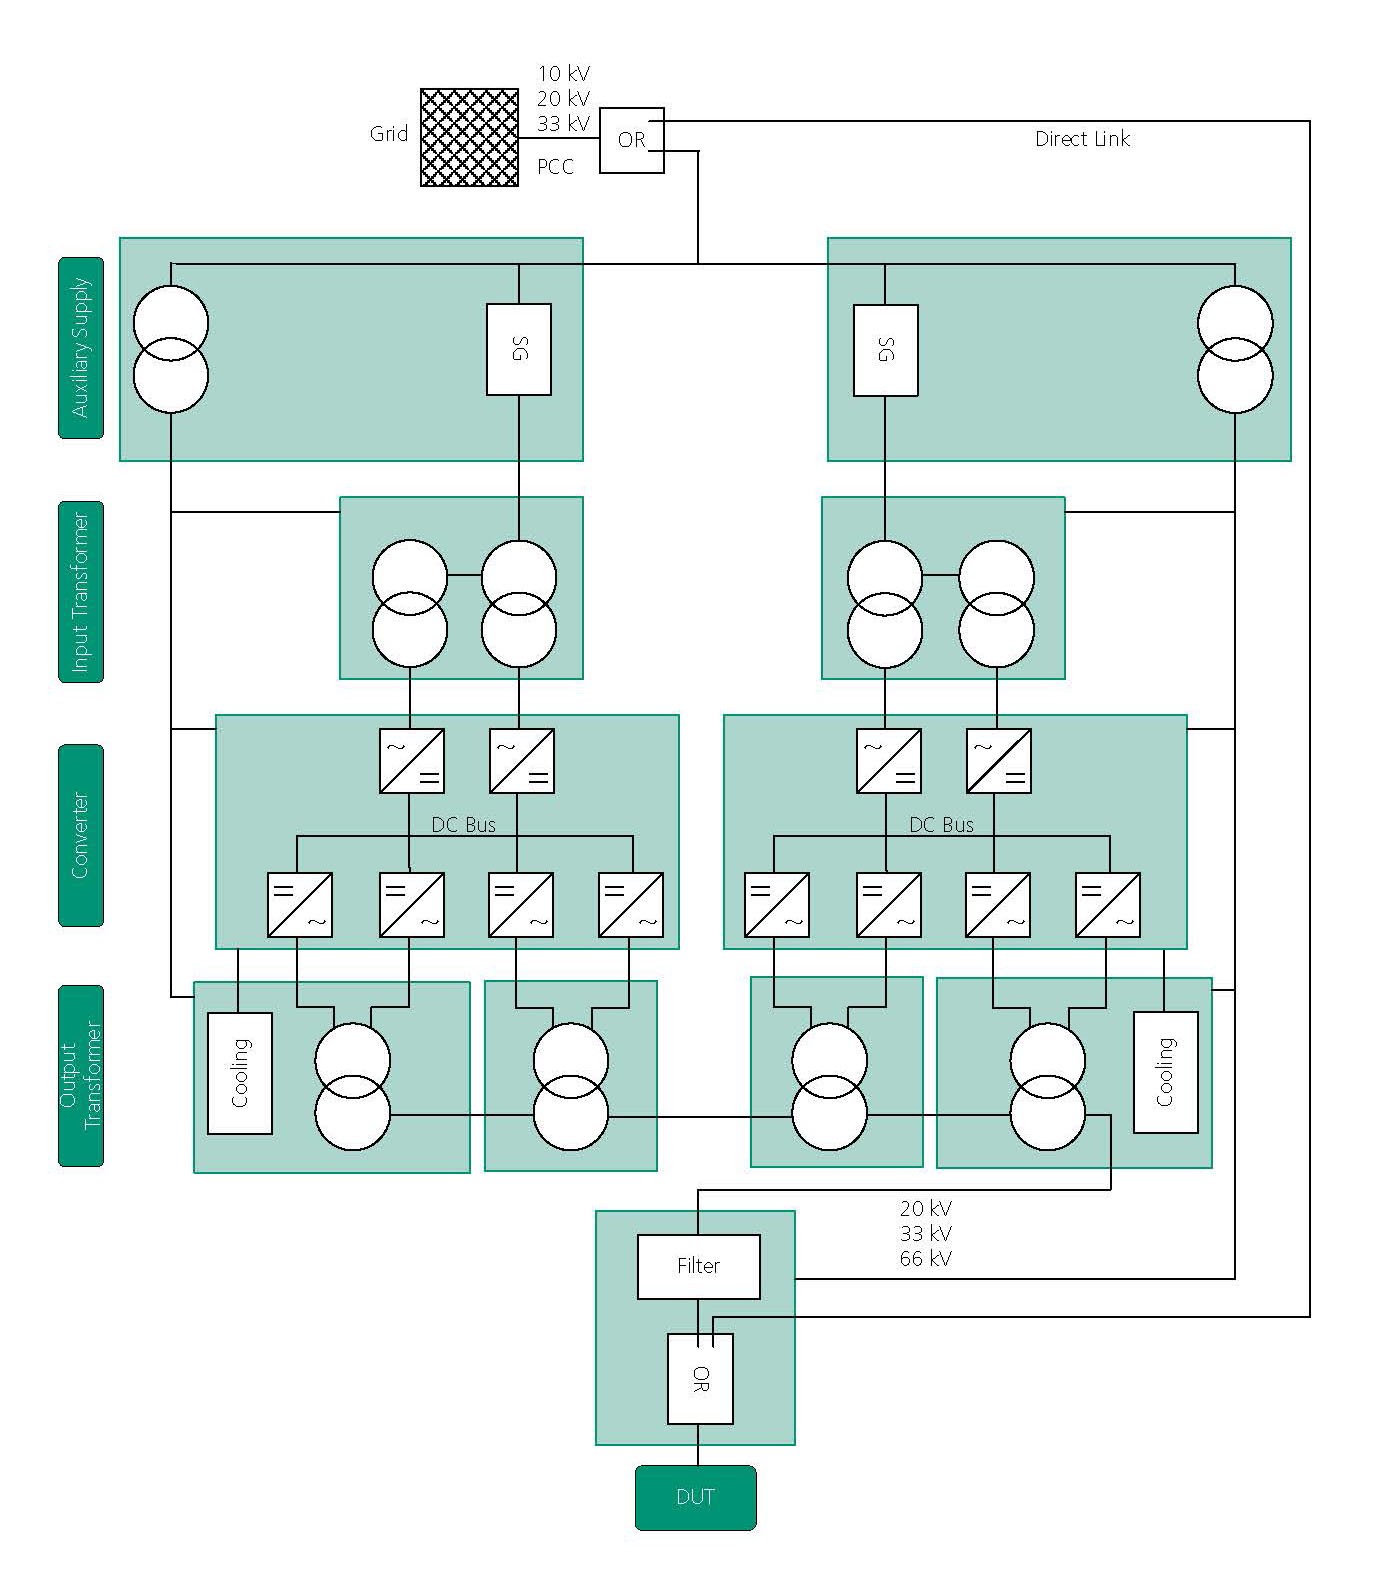 Aufbau des Mobil-Grid-CoP. Die einzelnen Komponenten des Mobil-Grid-CoPs werden in Überseecontainern untergebracht, welche im Übersichtsplan grün dargestellt sind. 